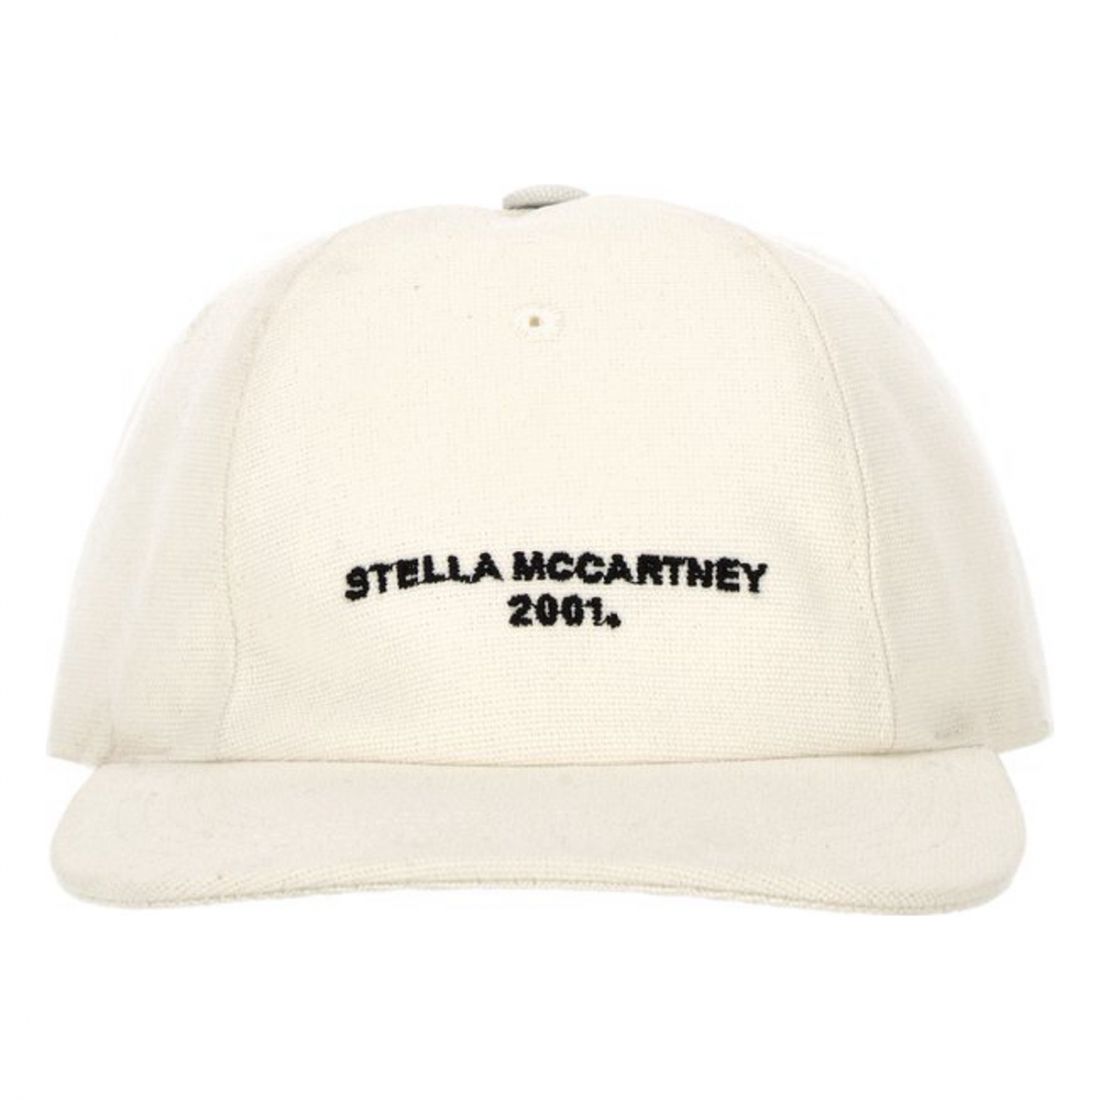 Stella McCartney - Casquette '2001' pour Femmes